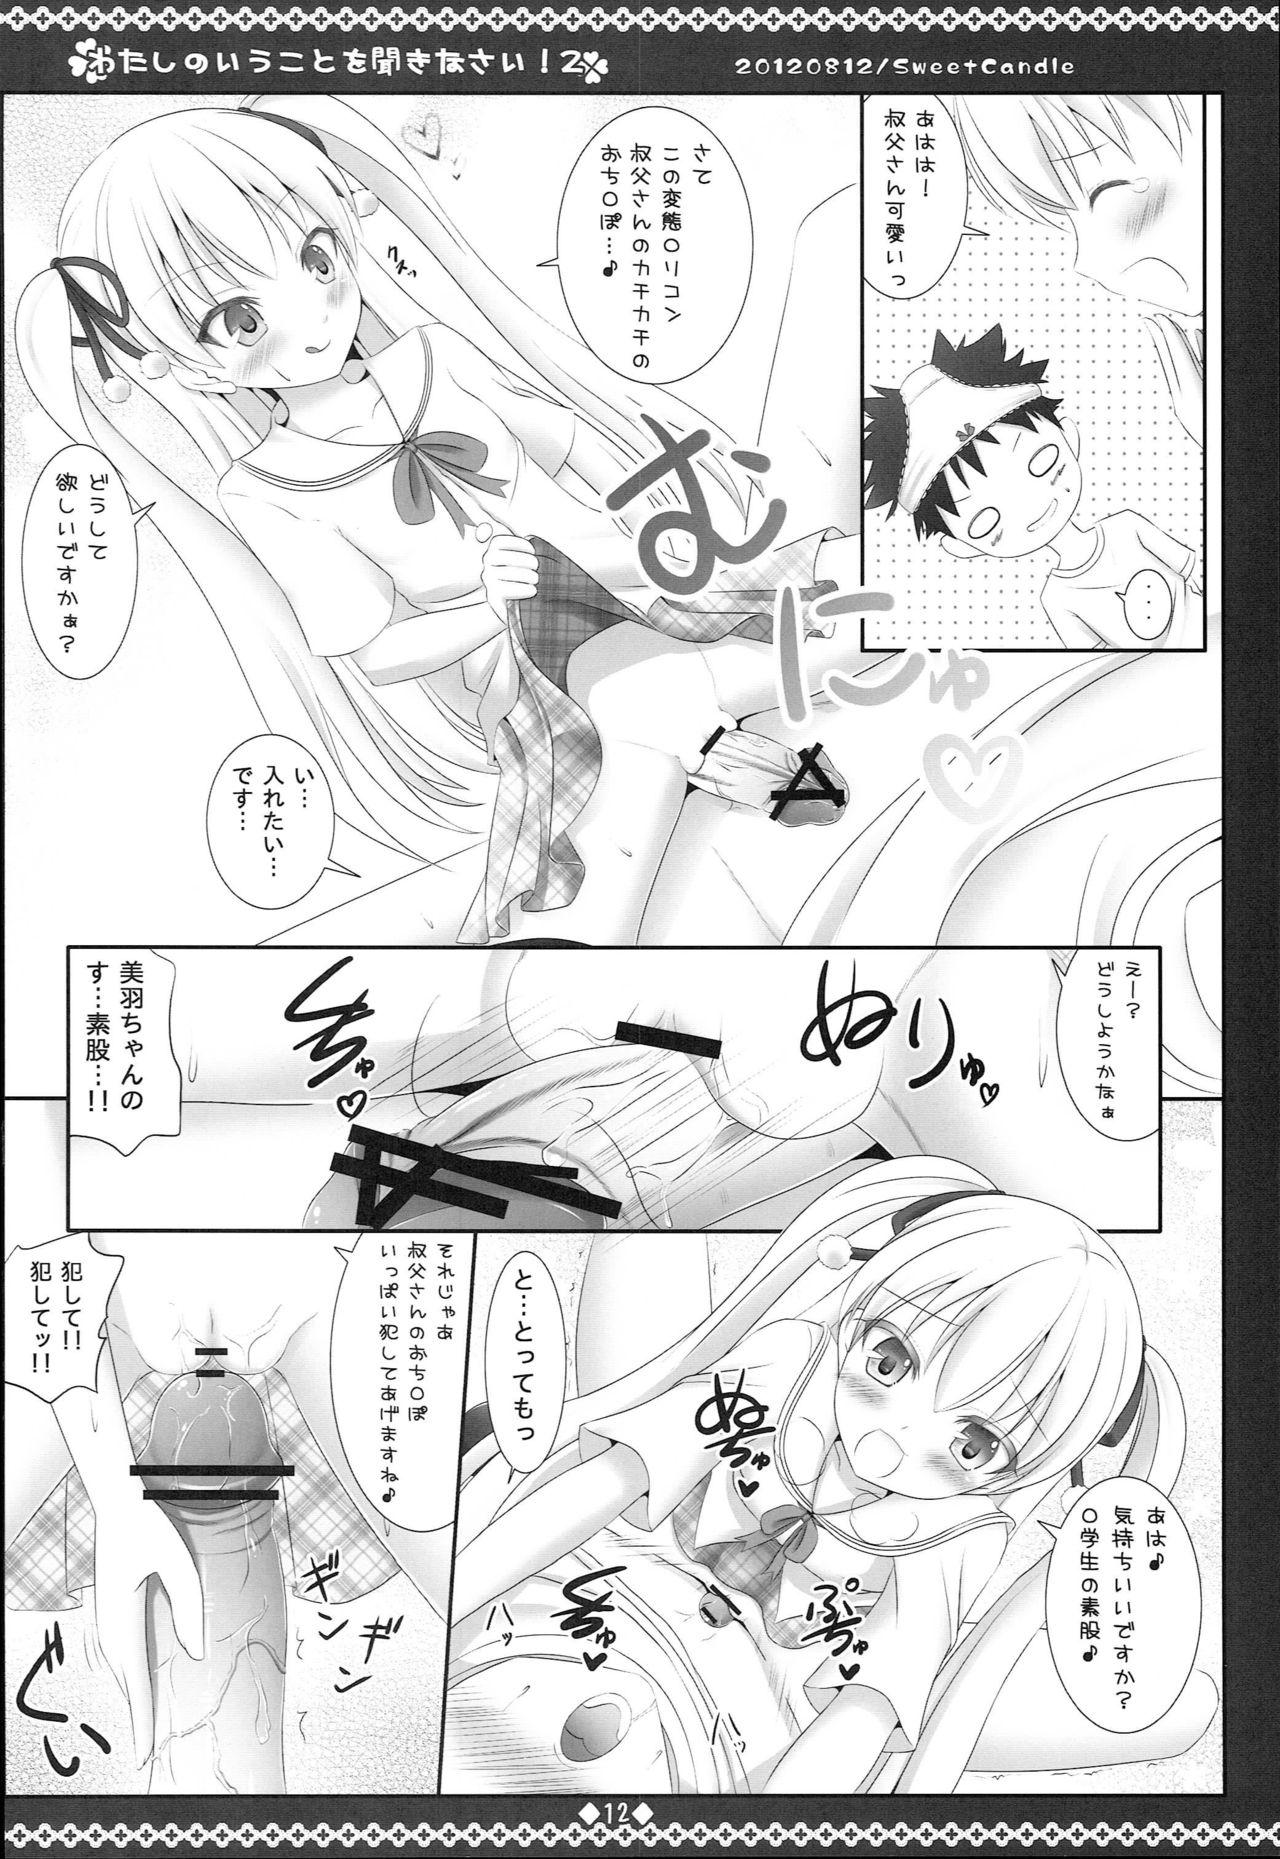 Interracial Sex Watashi no Iu Koto o Kikinasai! 2 - Papa no iu koto wo kikinasai Handsome - Page 11